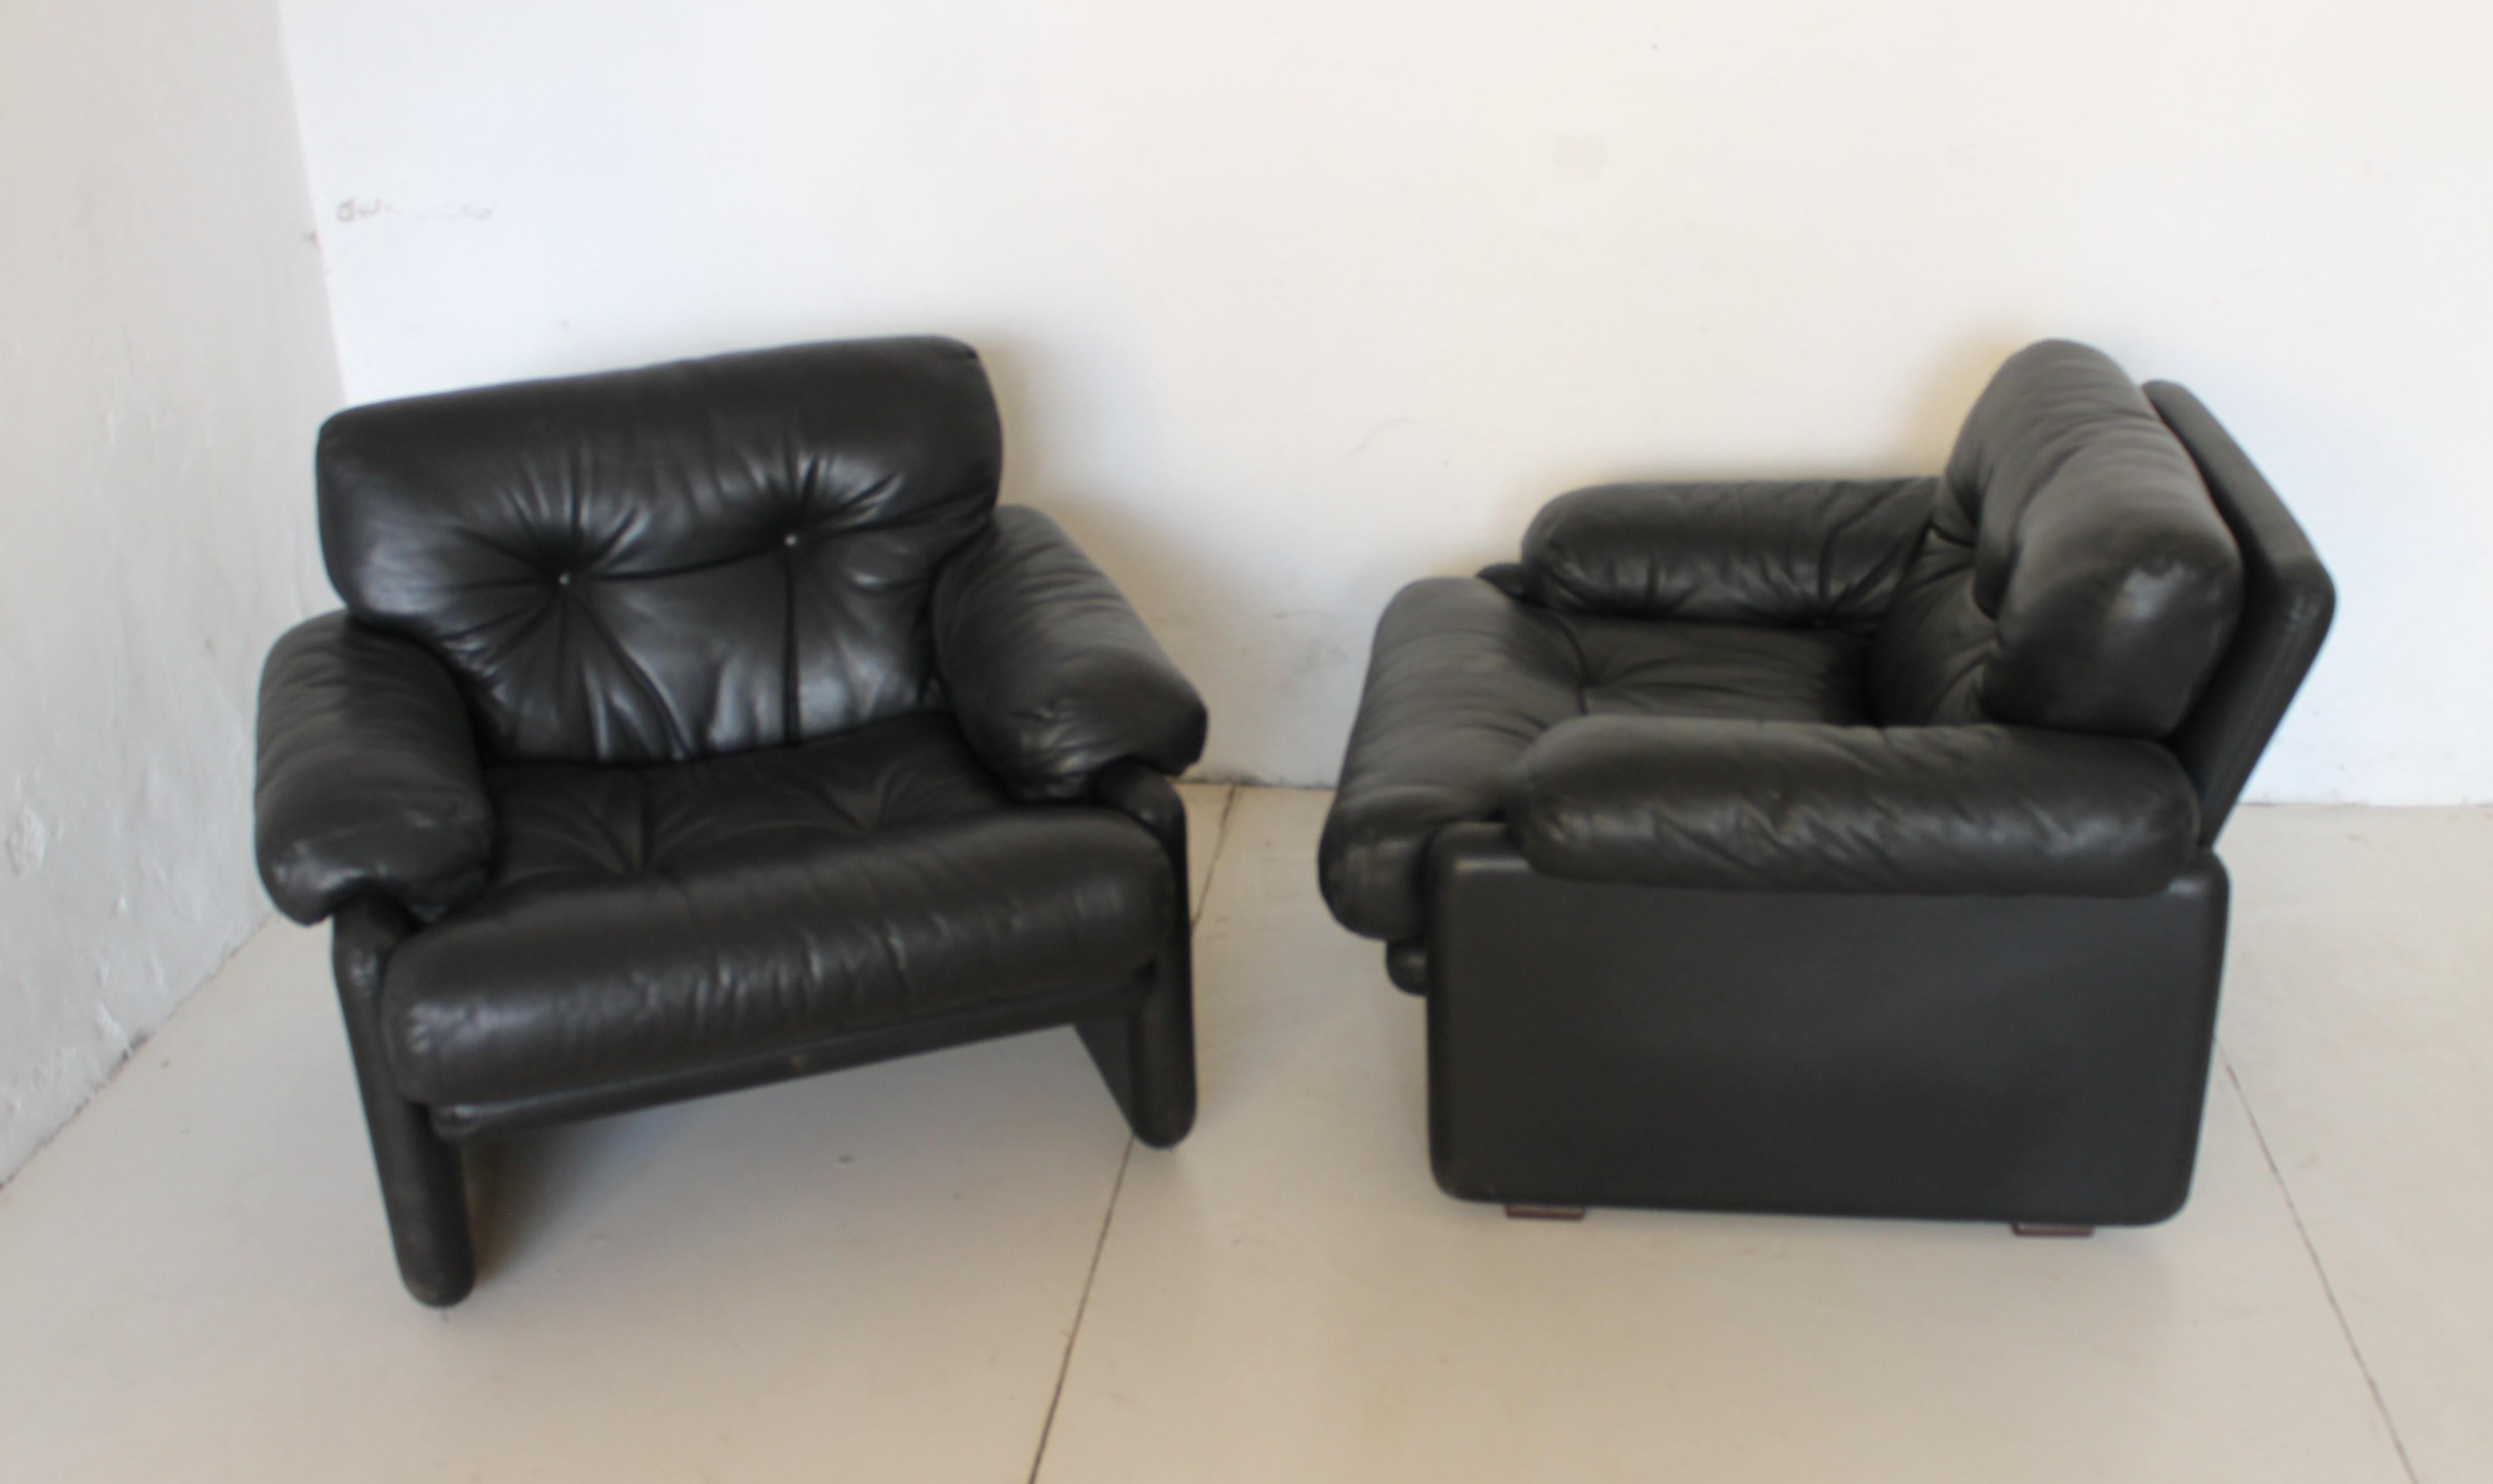 Coronado Lounge Chairs, entworfen von Tobia Scarpa für B&B Italia. Das Projekt stammt aus dem Jahr 1966. Schwarzes Leder, sehr guter Zustand.